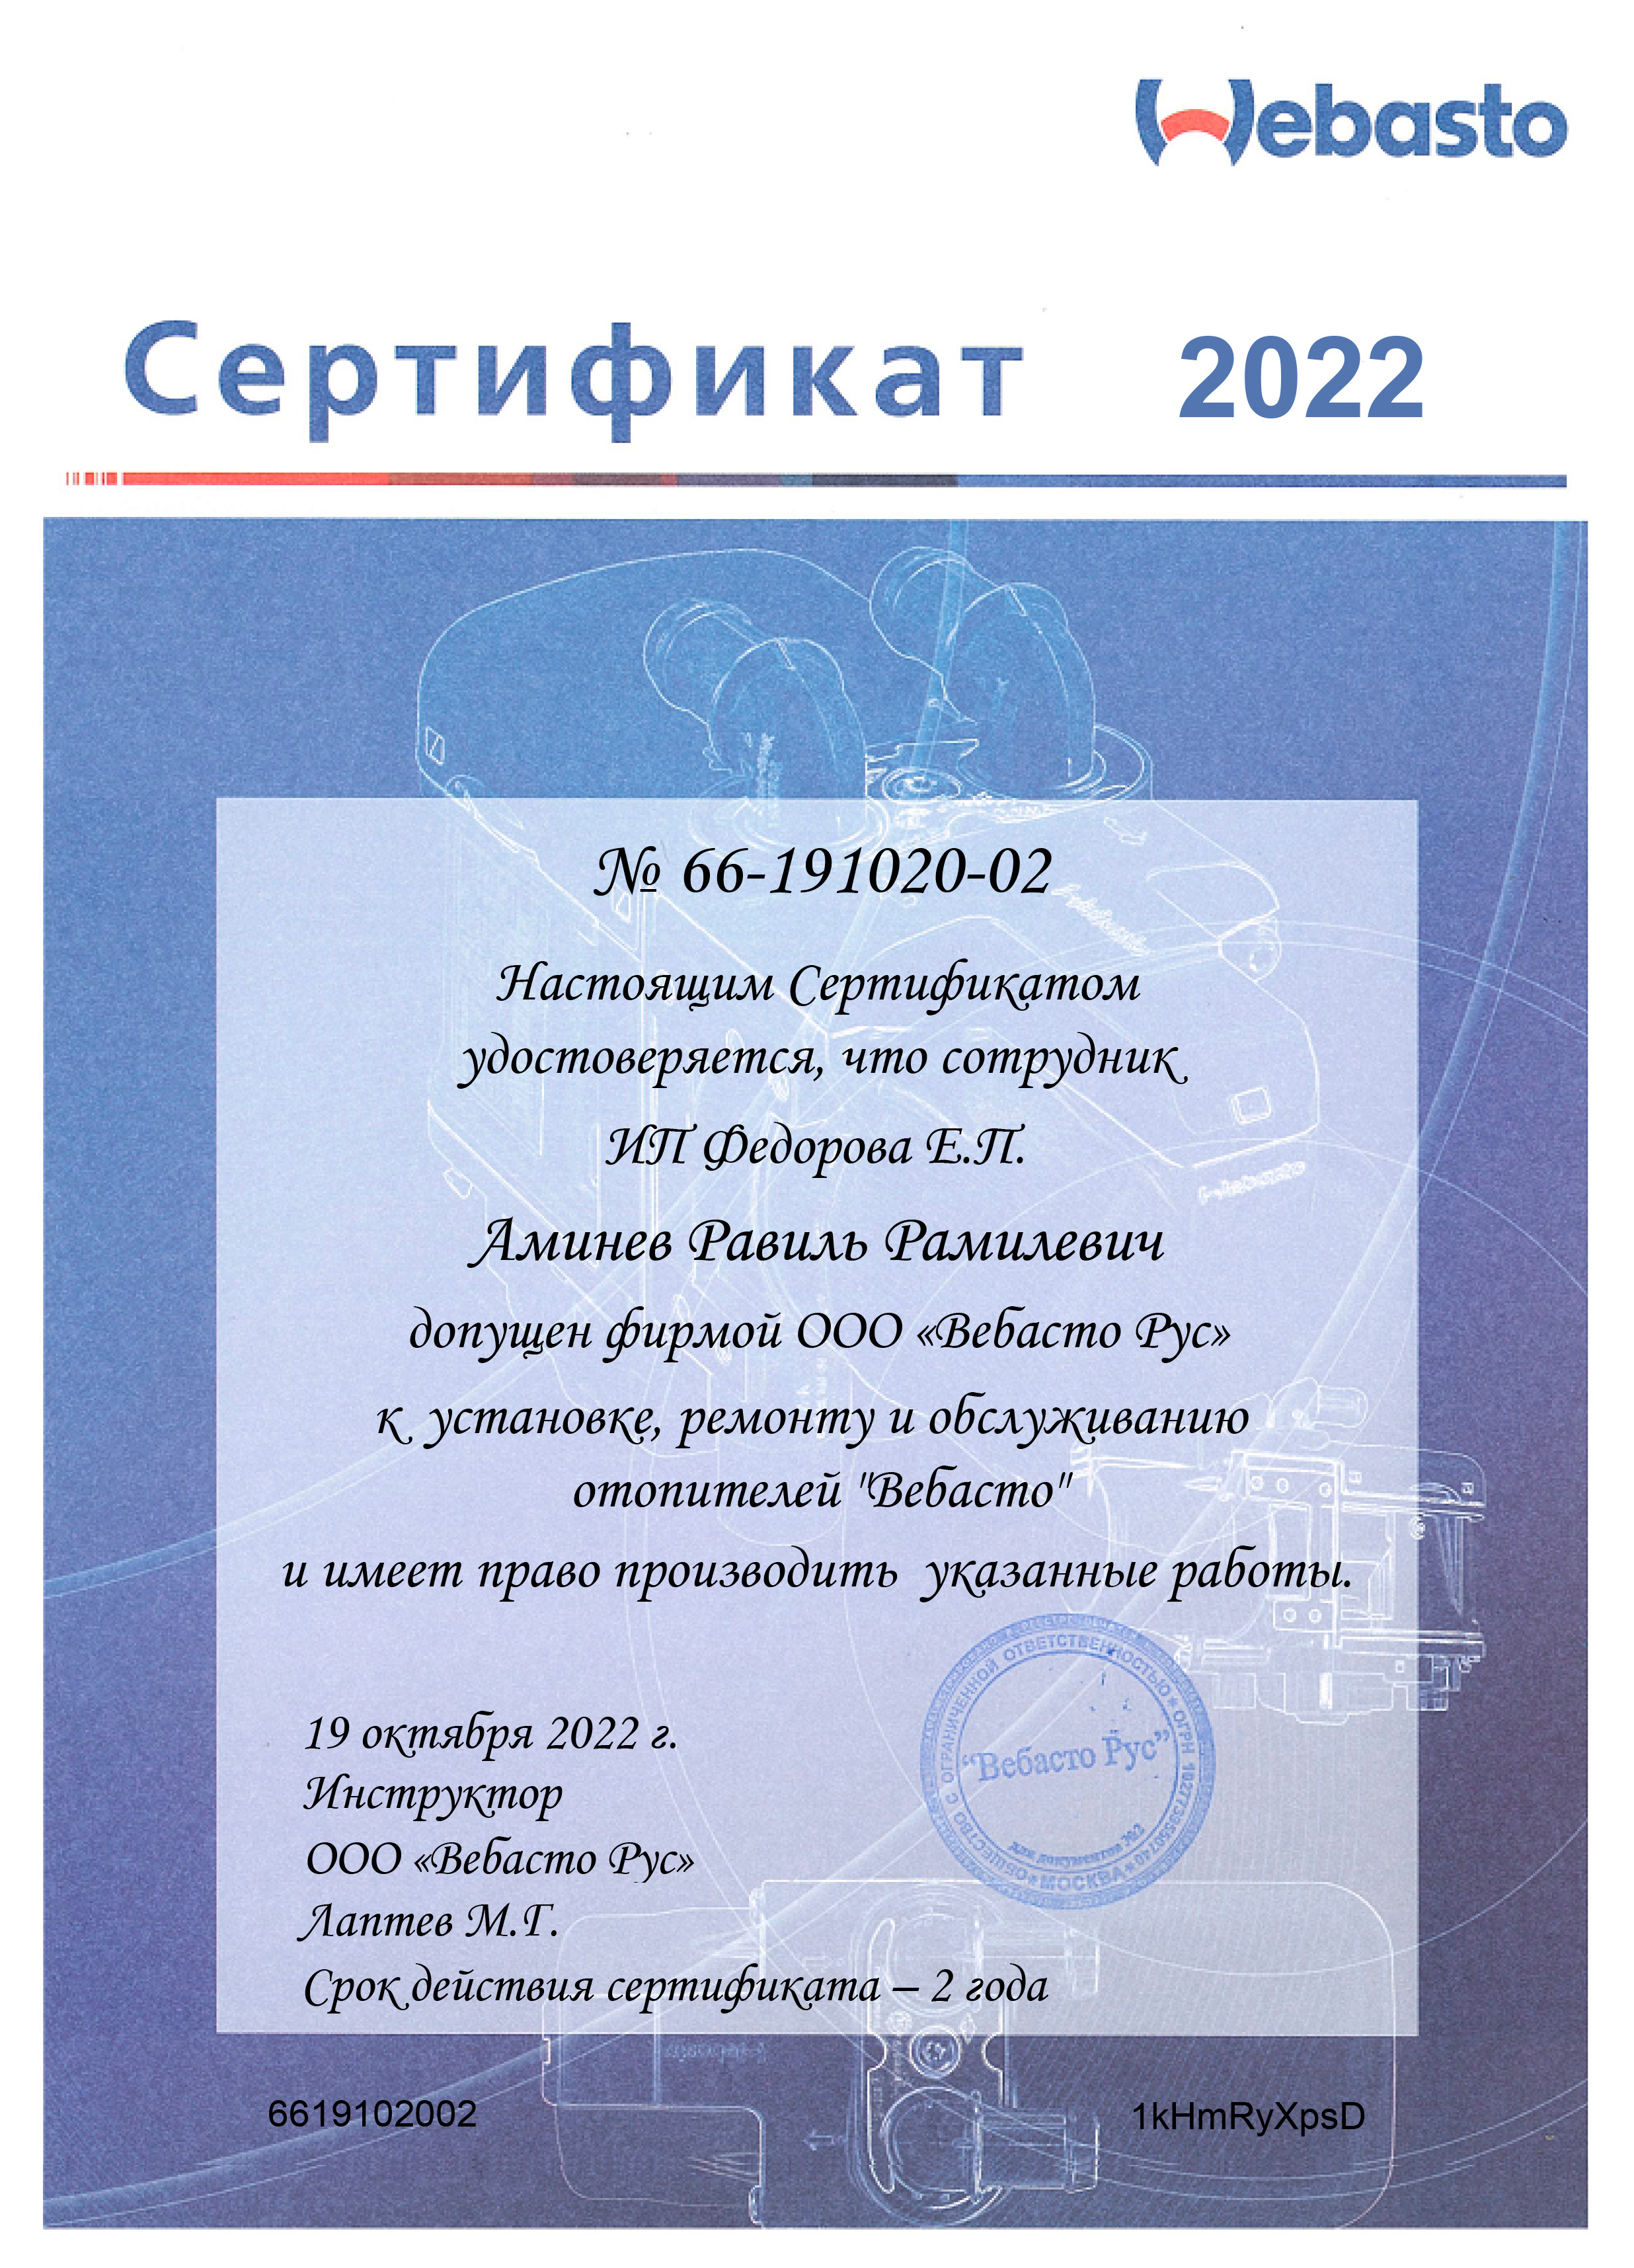 sertifikat-webasto-2022